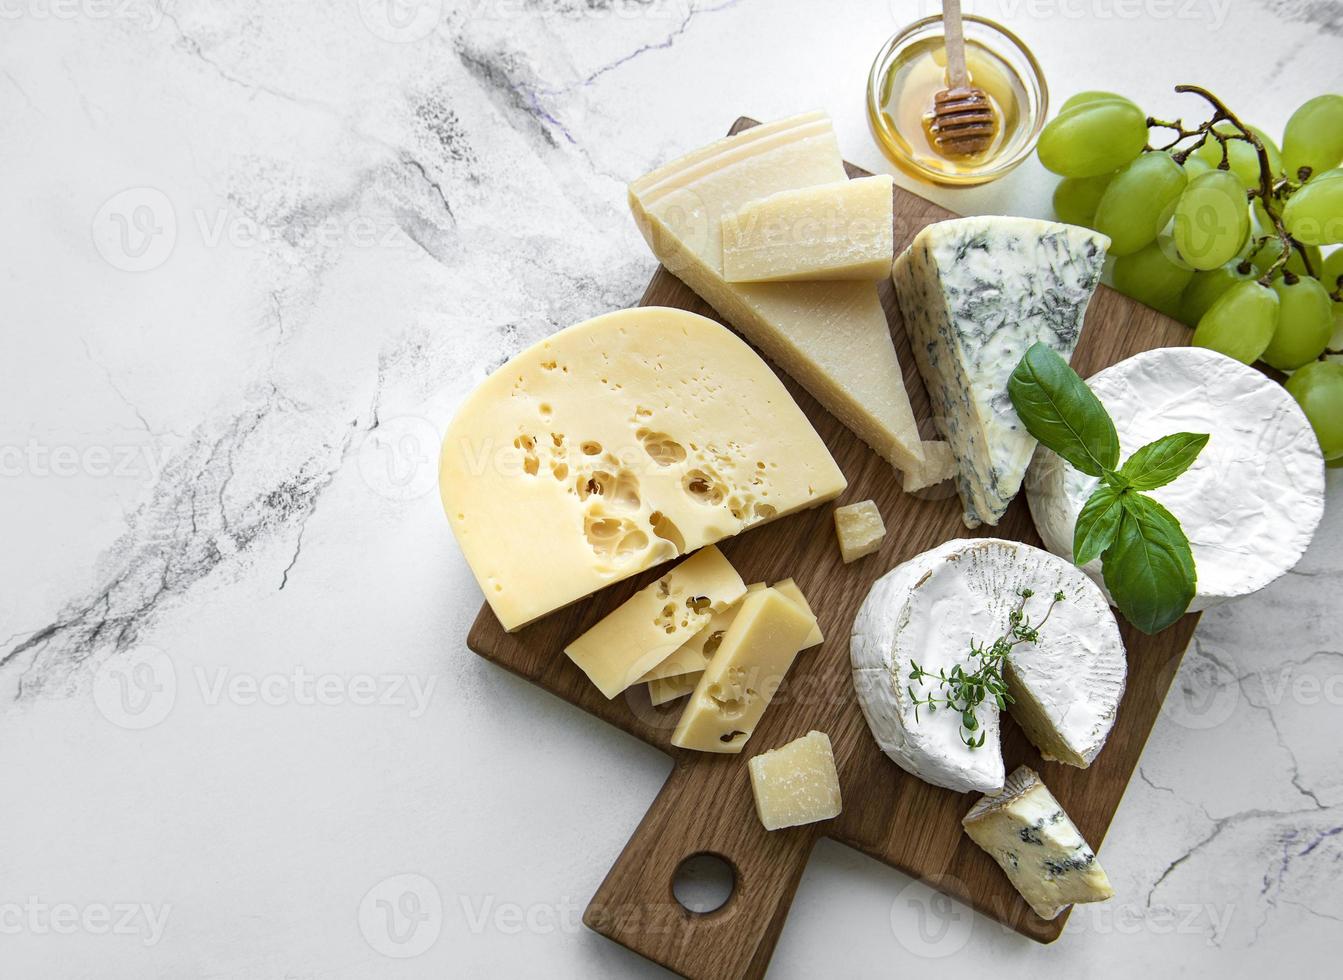 divers types de fromages, raisins et miel photo